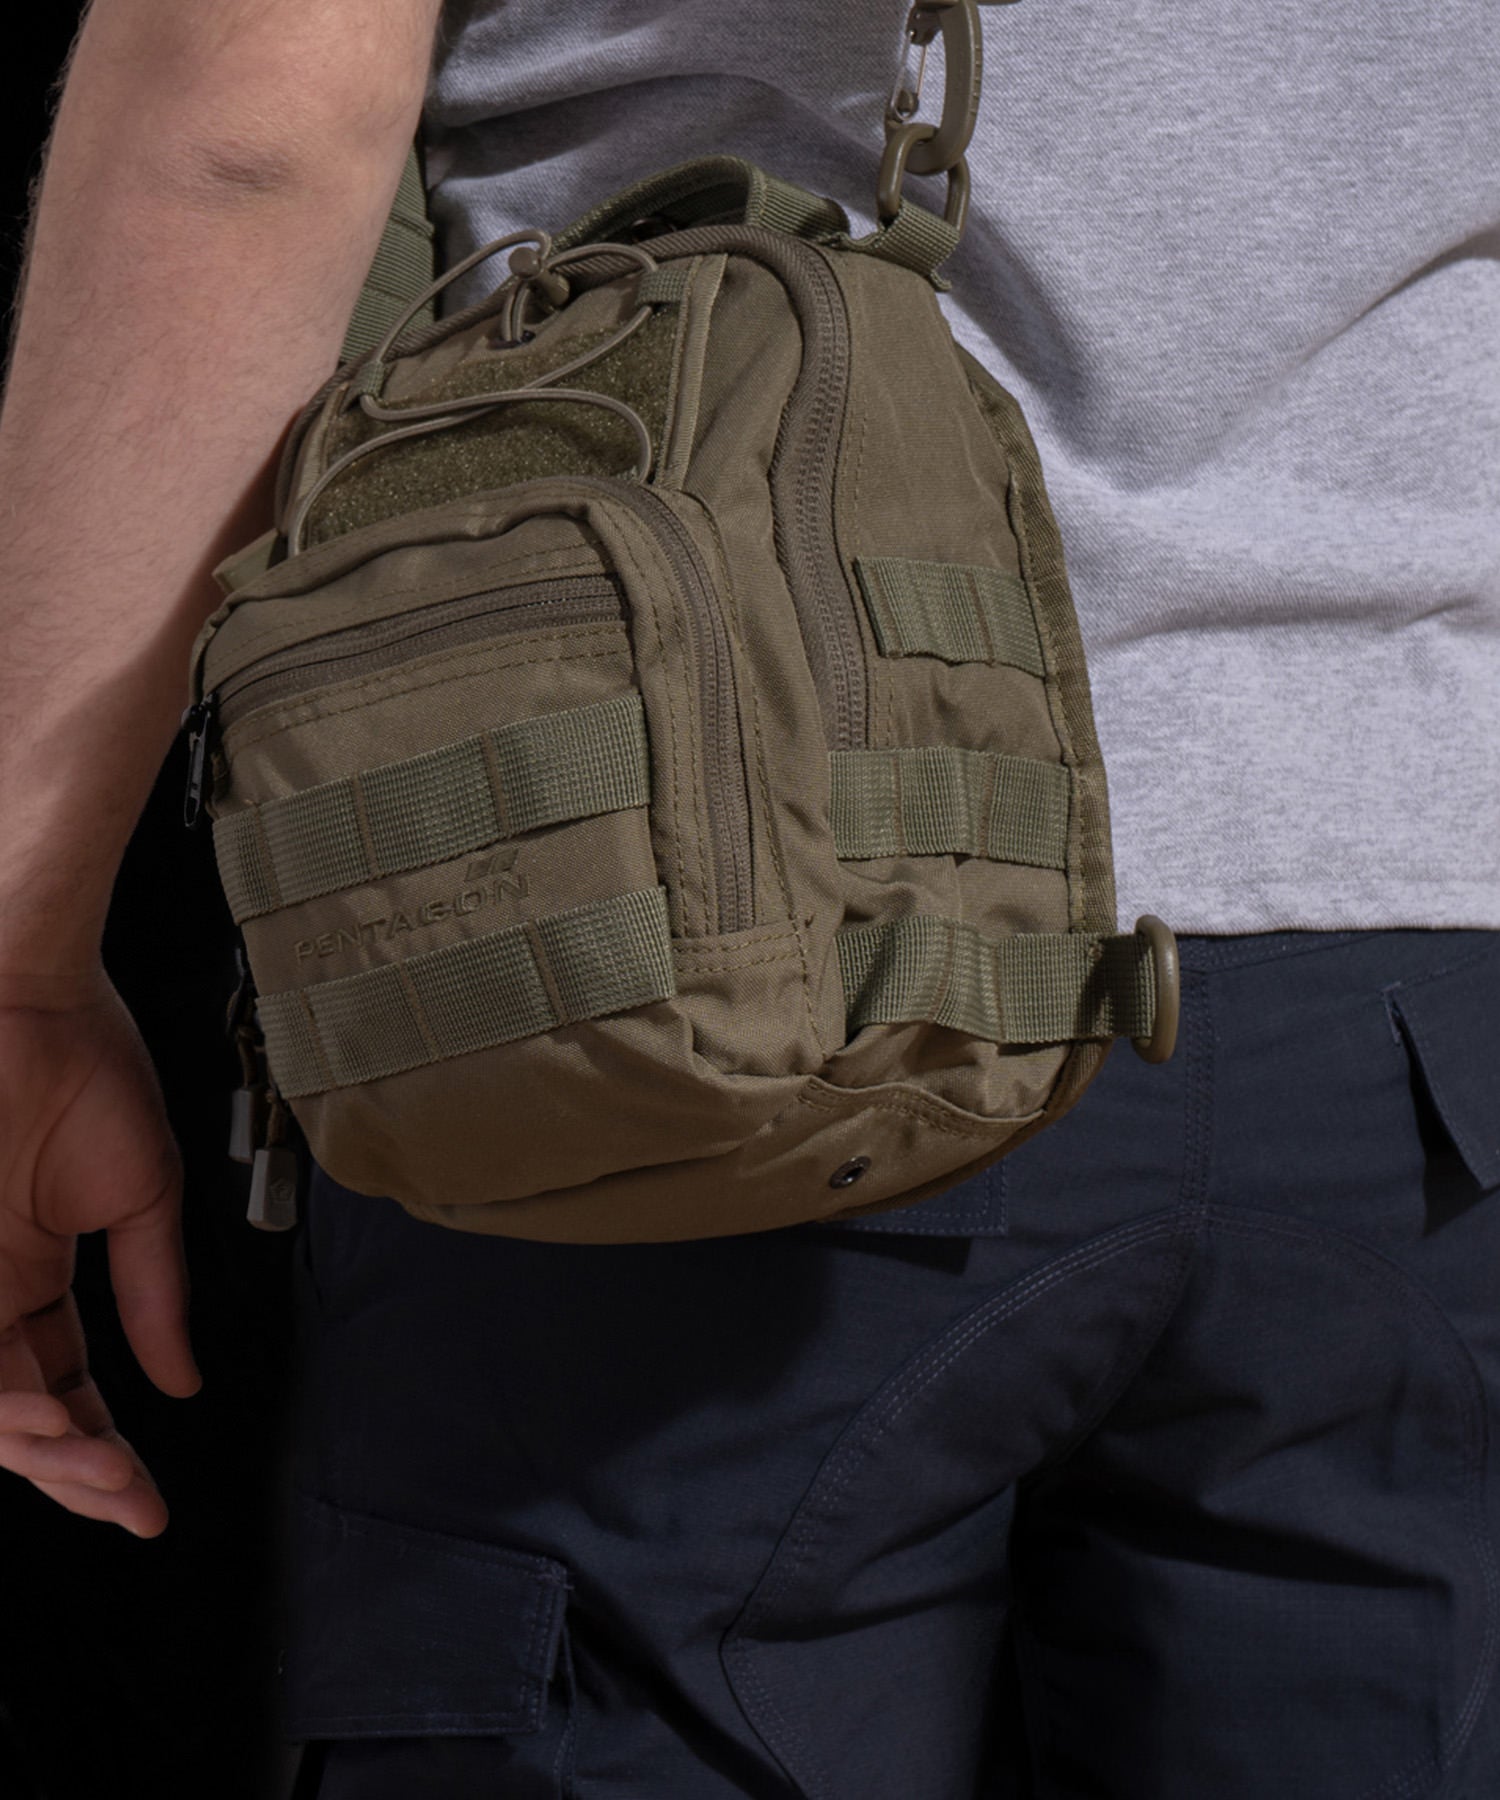 universal chest bag 2.0 di Pentagon Coyote indossata a tracolla